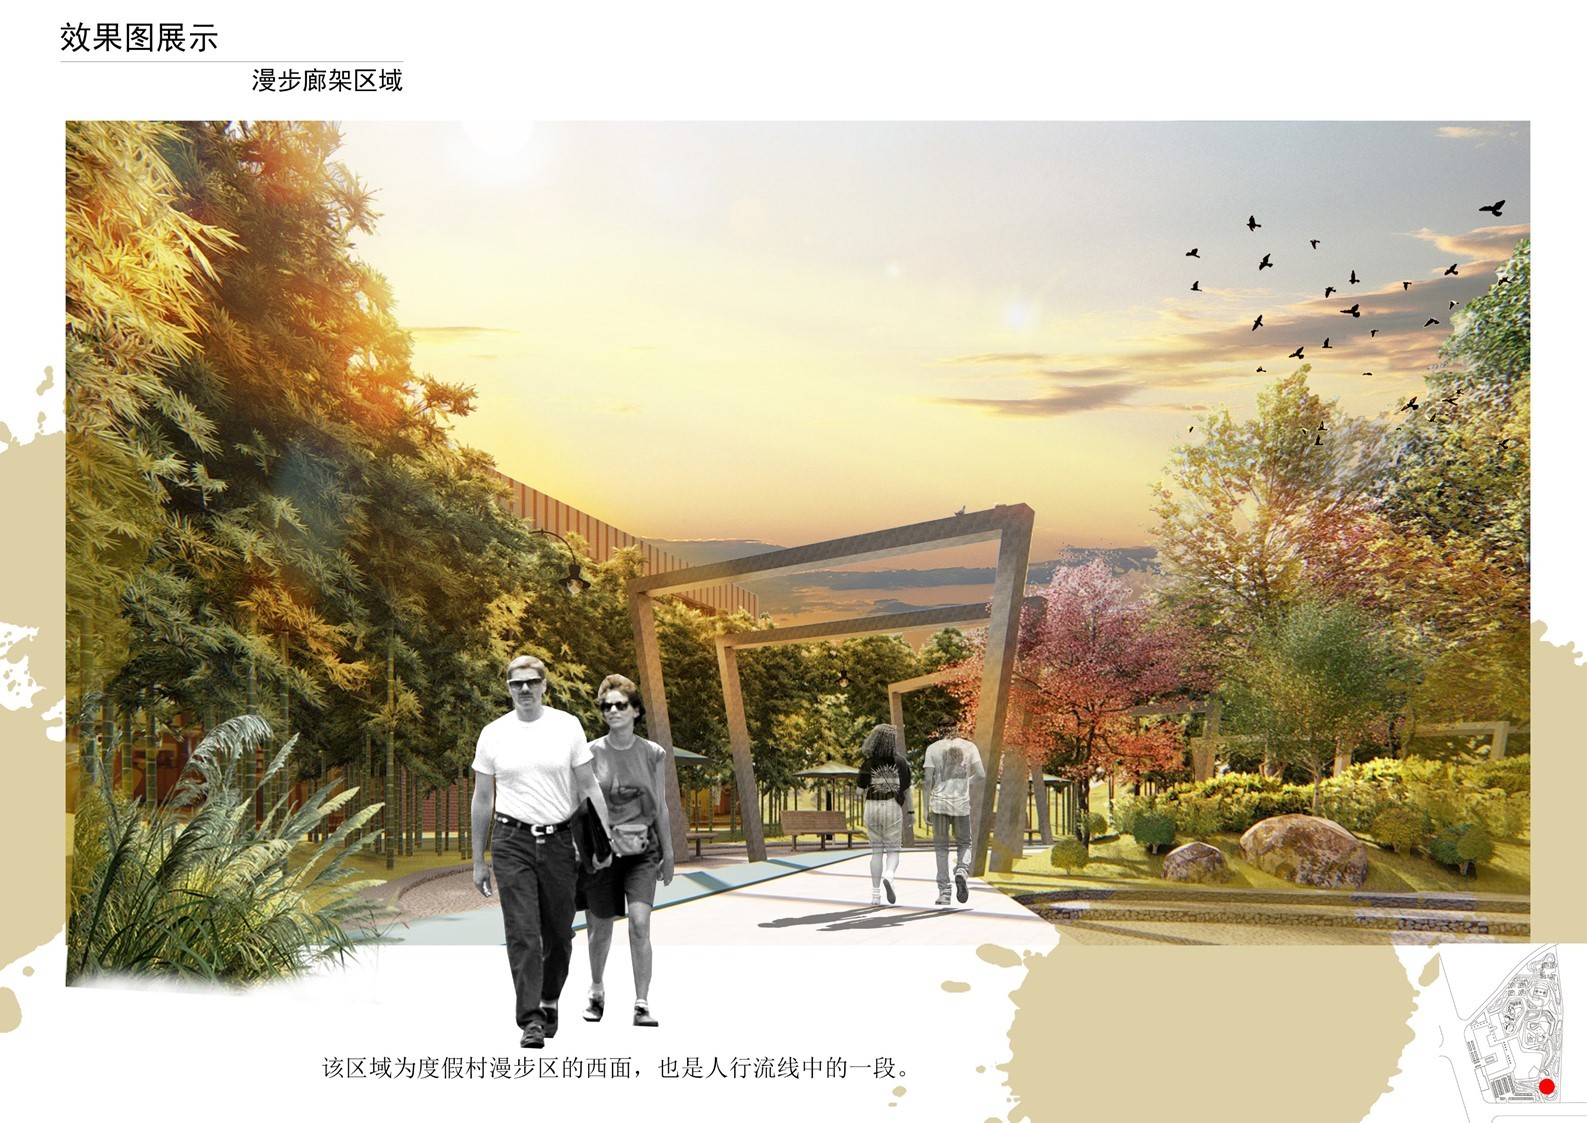 “栖箱记”常州溧阳集装箱主题度假村景观设计